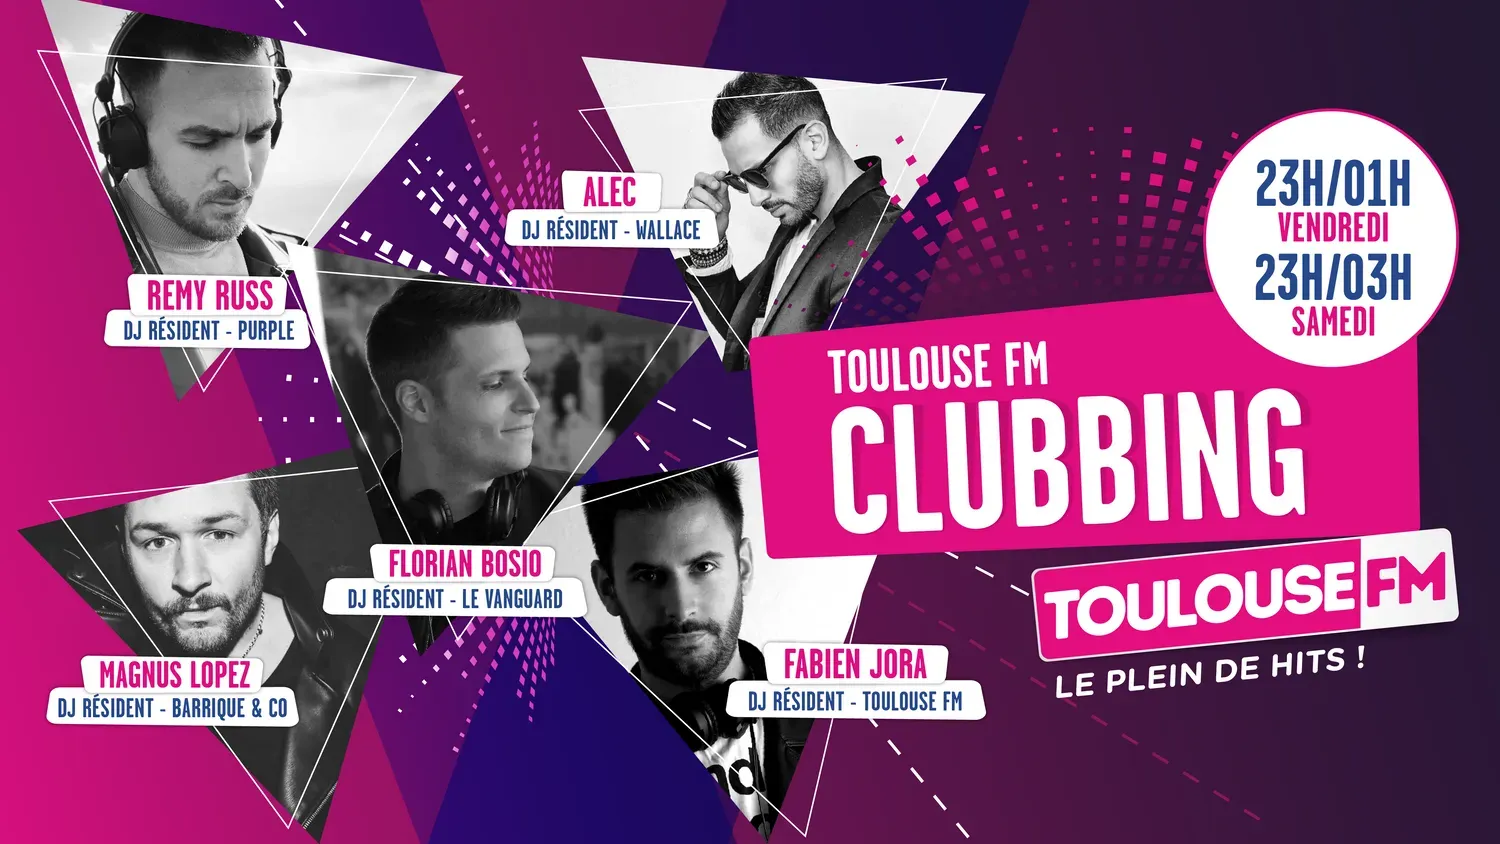 Toulouse fm clubbing